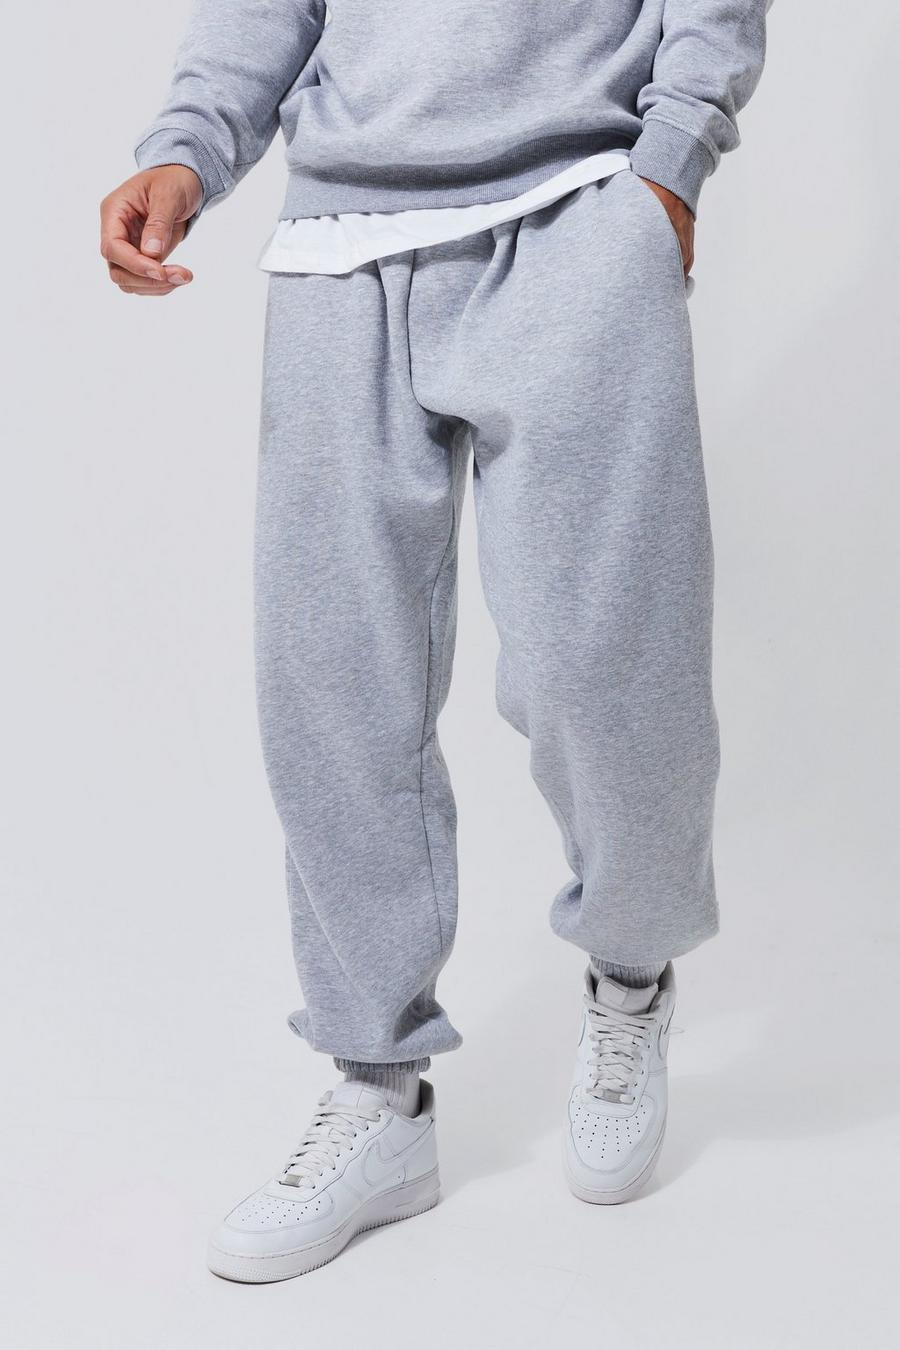 Pantaloni tuta Tall Basic comodi, Grey marl grigio